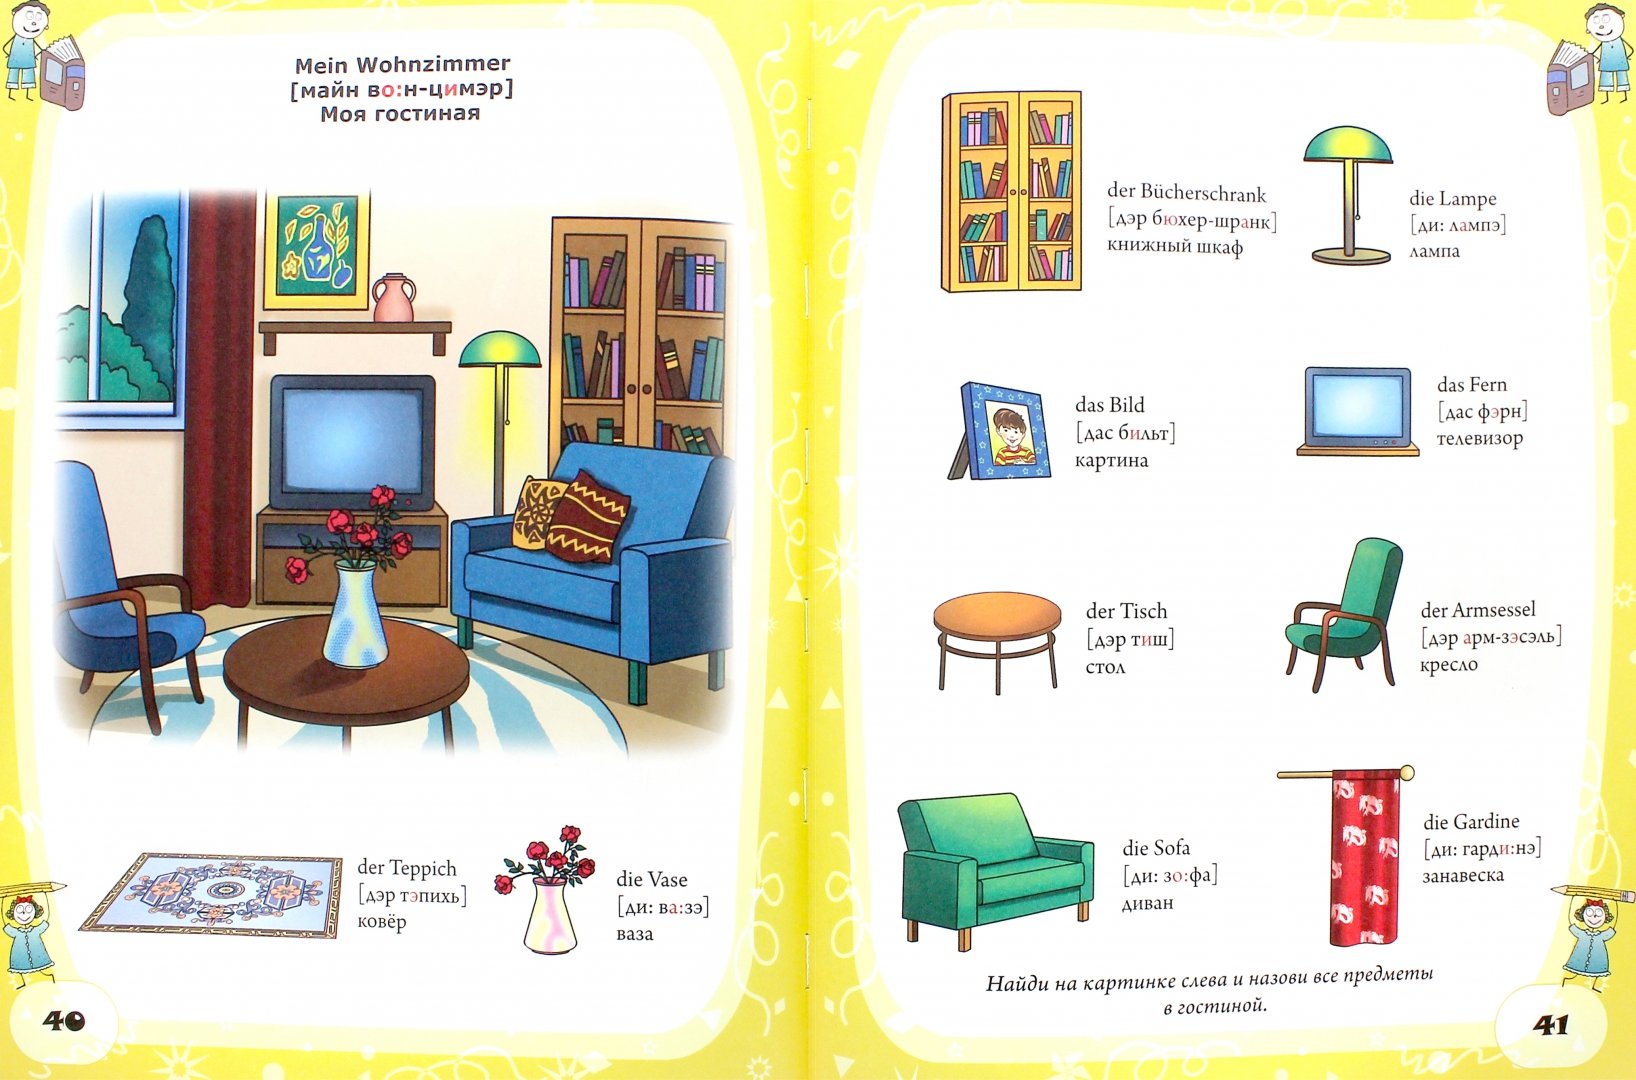 Тема мебель на английском. Мебель на английском языке. Предметы мебели по немецки. Мебель на английском для детей. Предметы мебели на немецком языке.